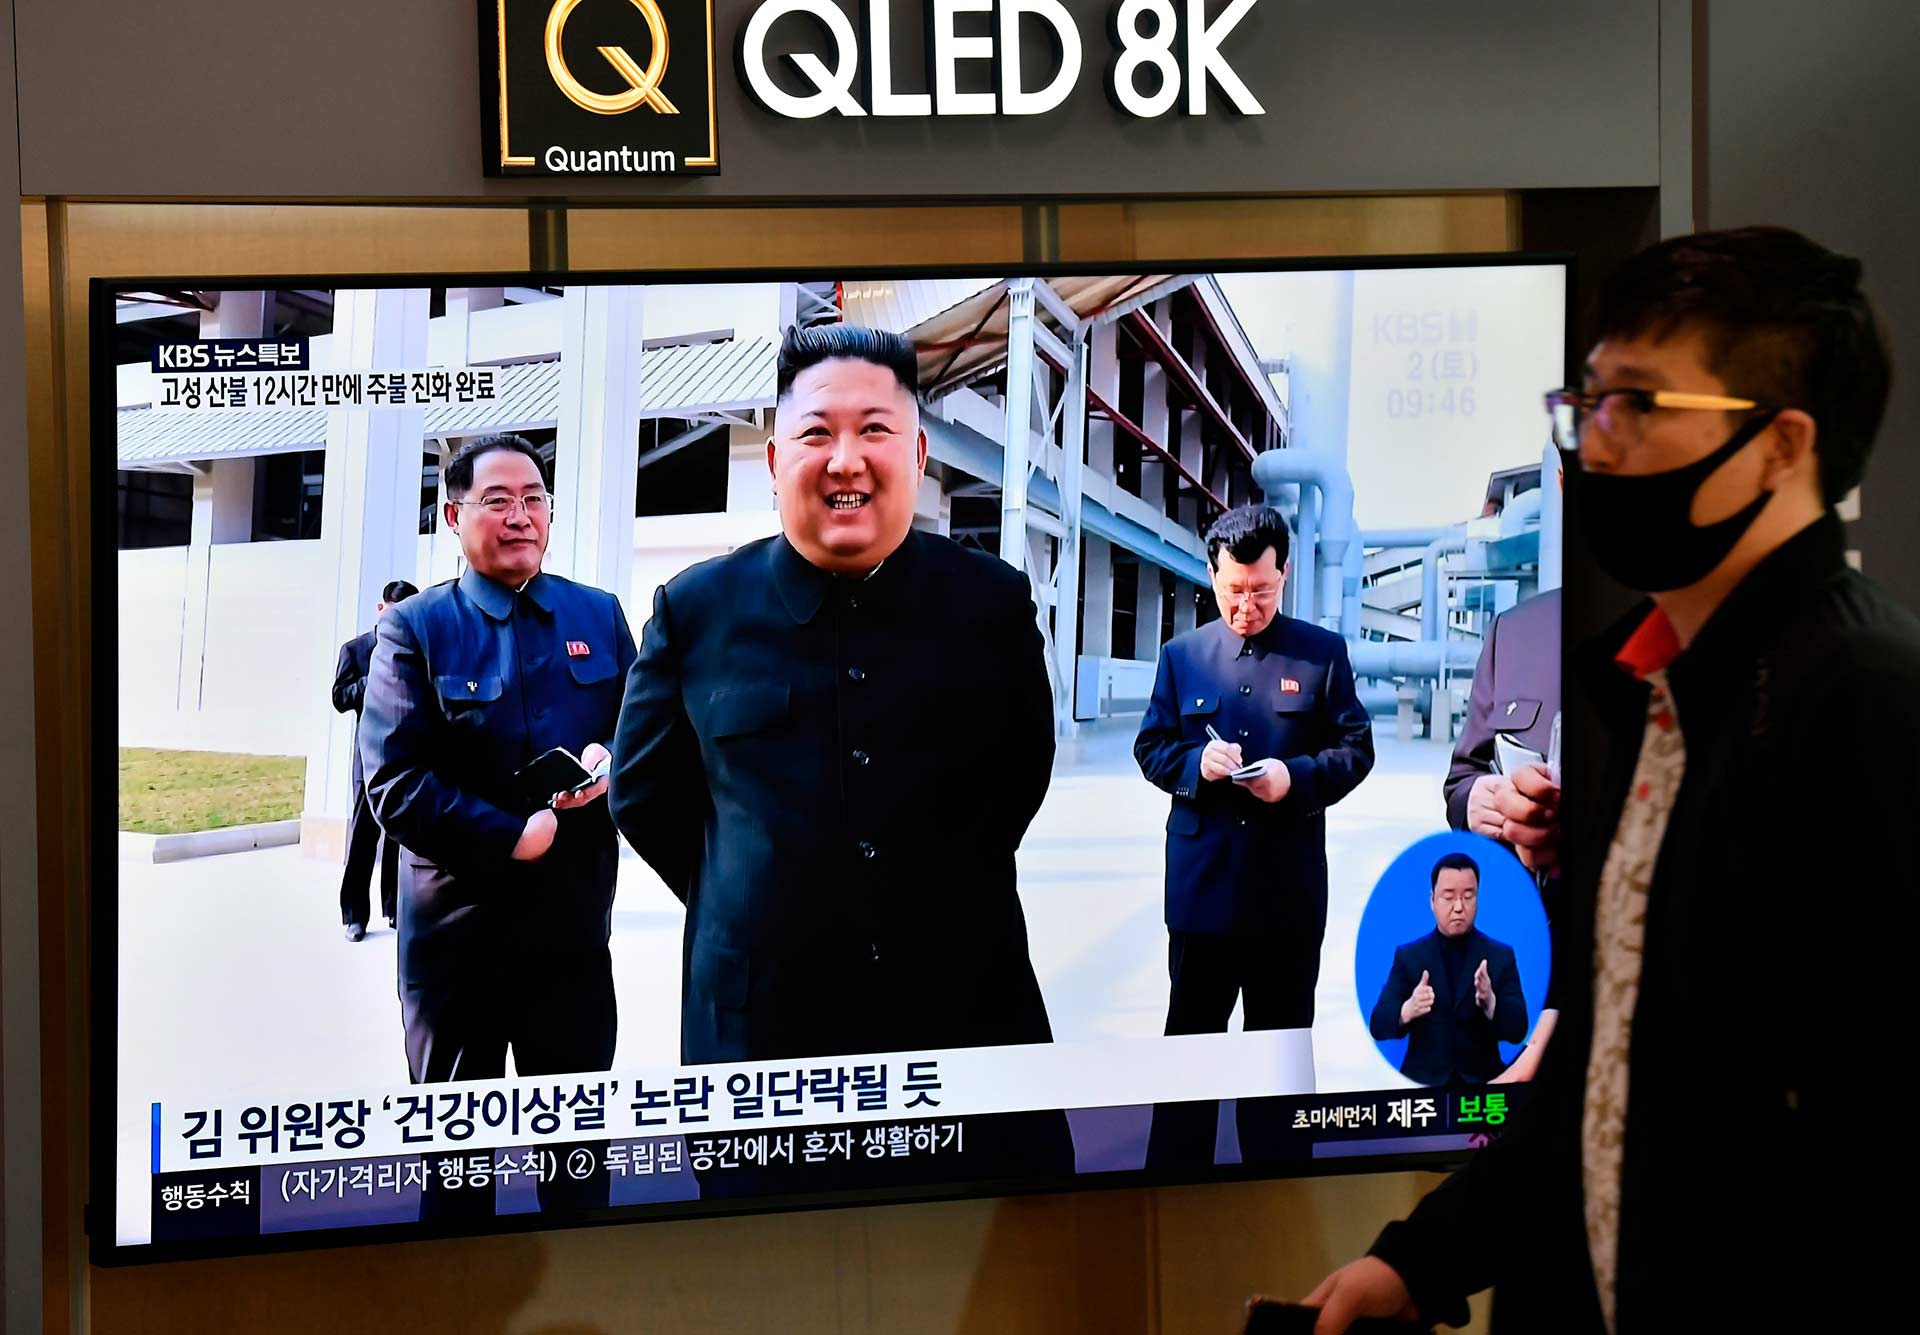 El líder norcoreano Kim Jong-un reaparece en público después de tres semanas